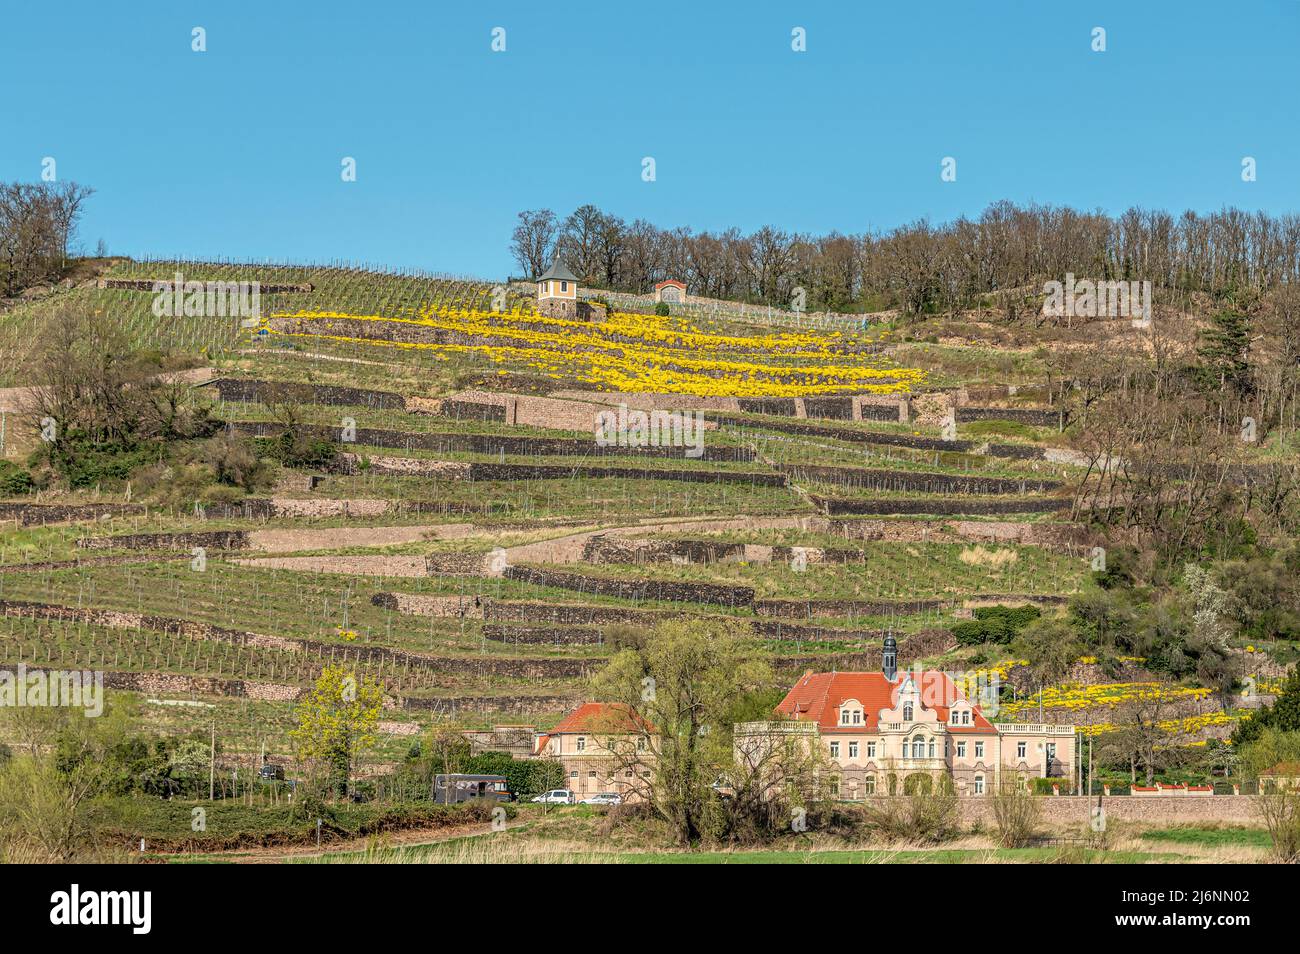 Die Weinberge des Spaargebirges im Elbtal bei Meißen, Sachsen, Deutschland Stockfoto